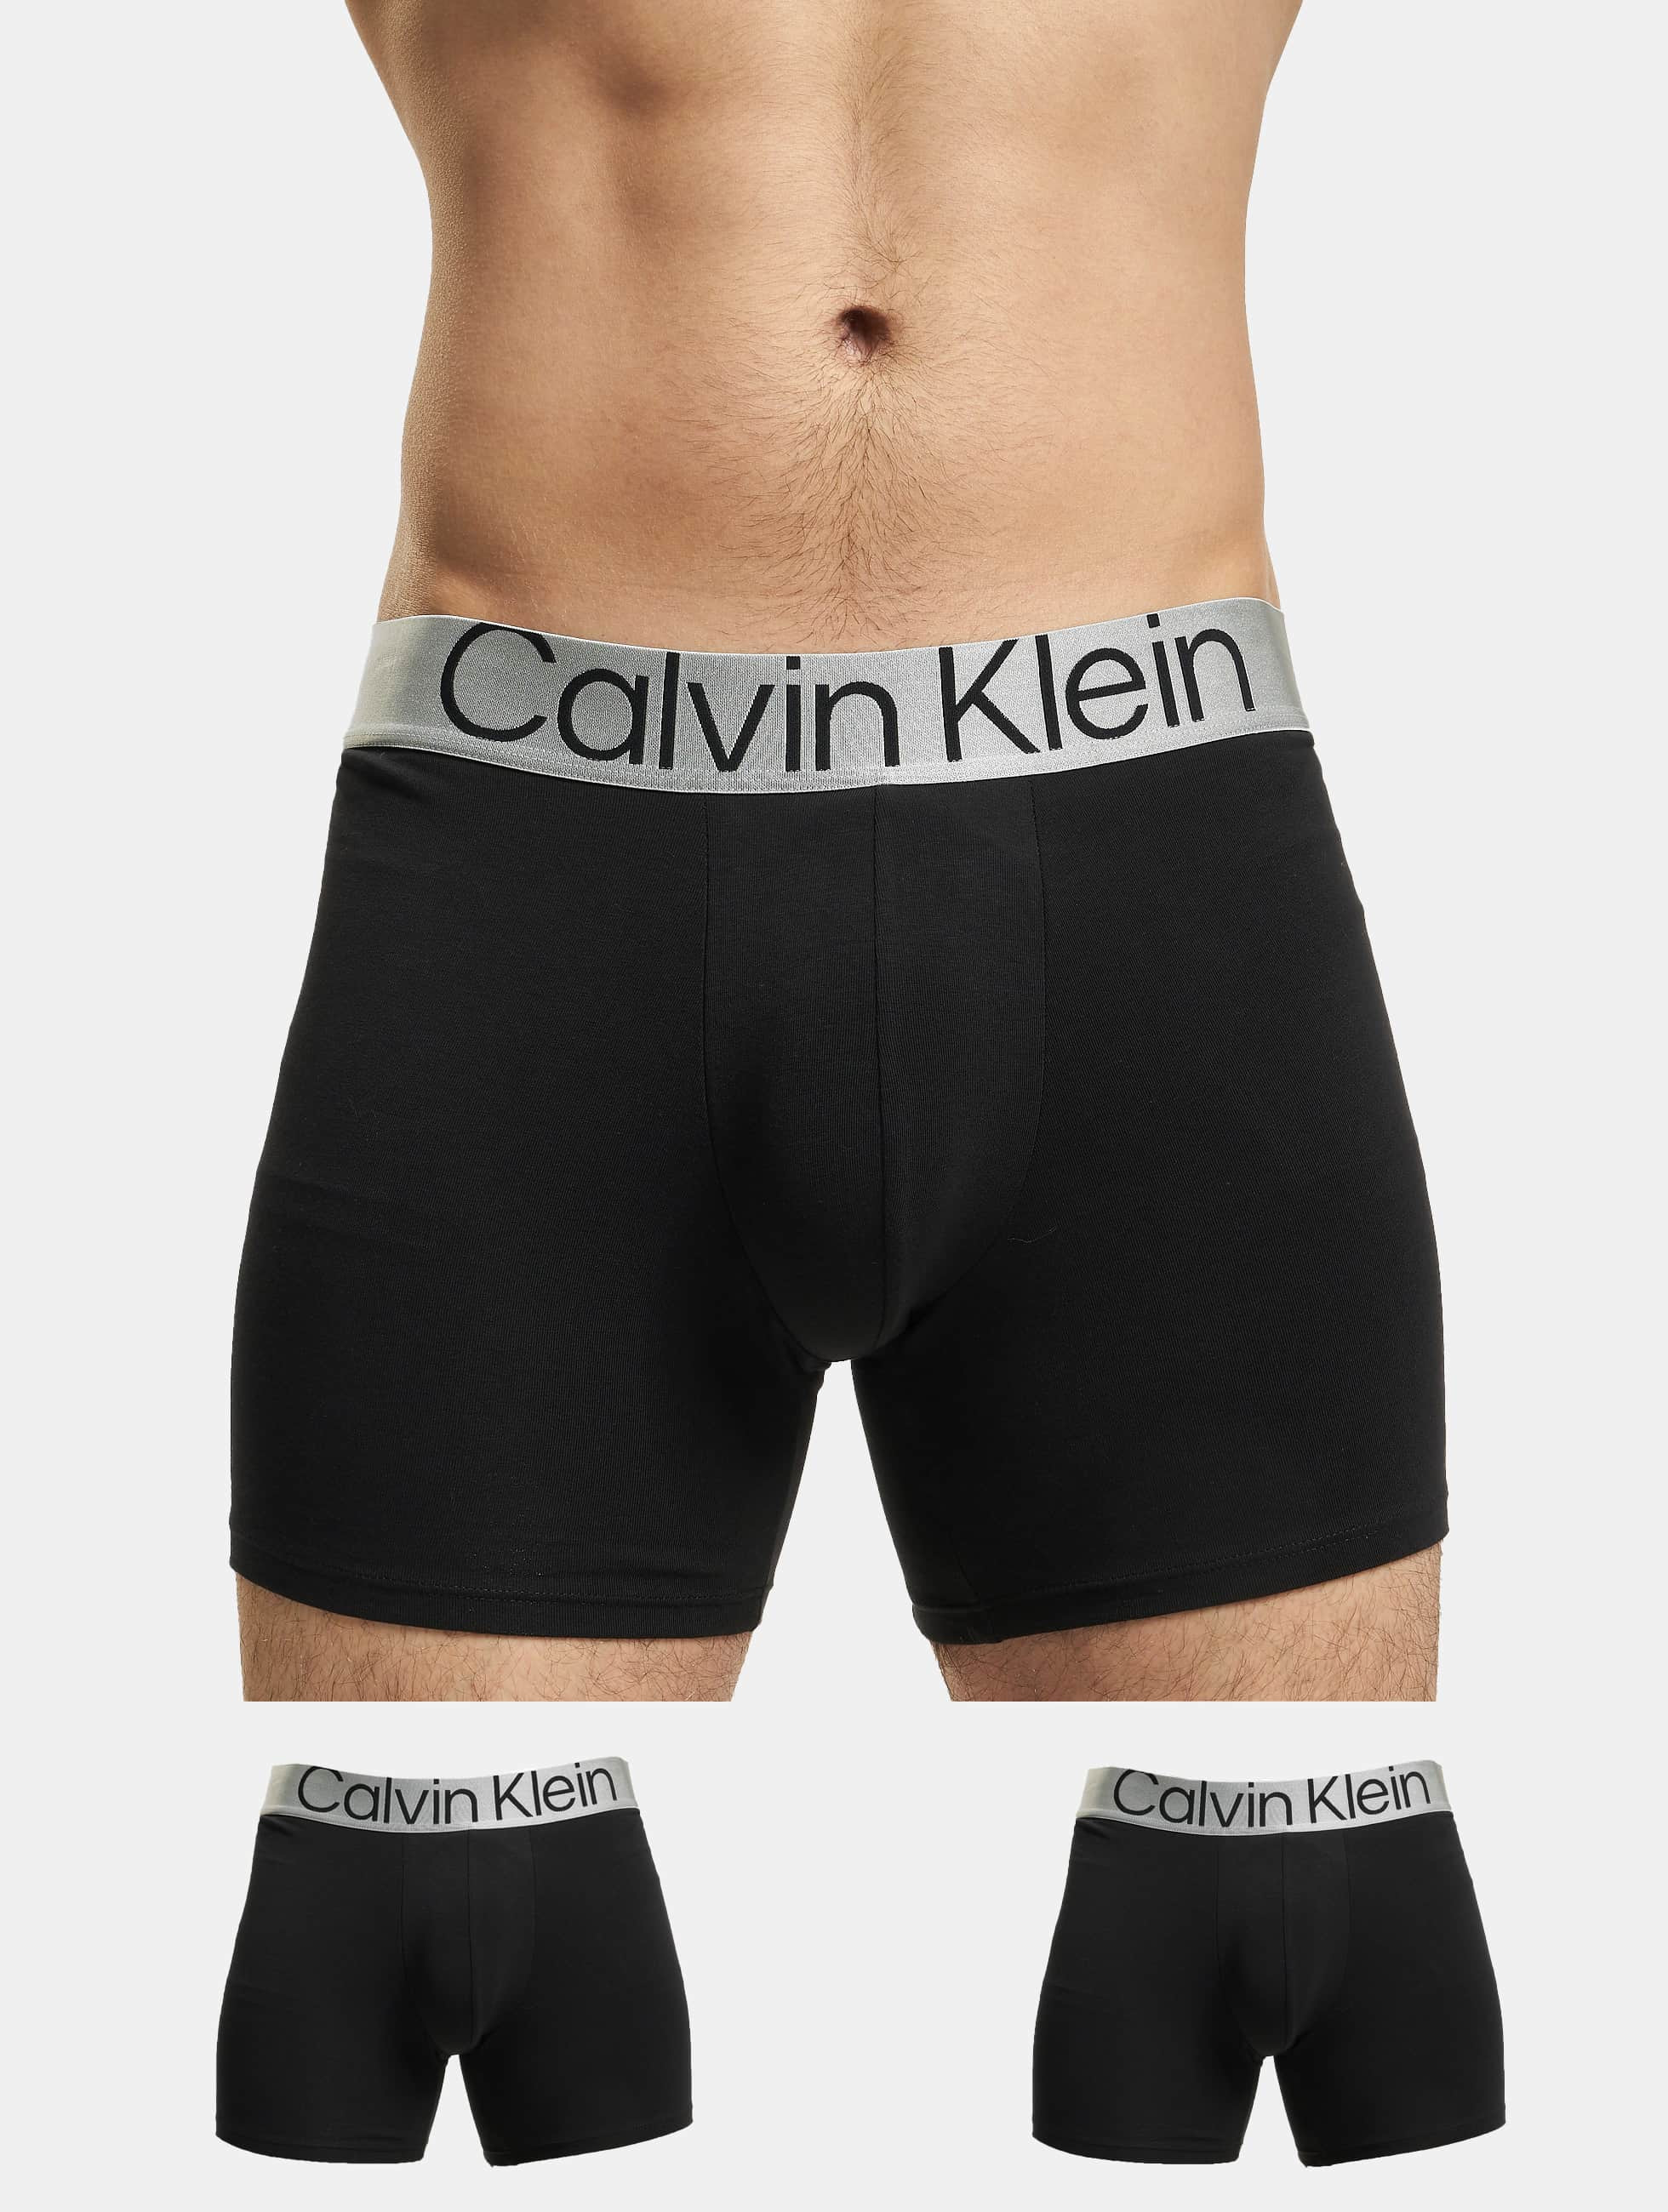 Het eens zijn met financiën mate Calvin Klein Herren Boxershorts 3-Pack in schwarz 957396